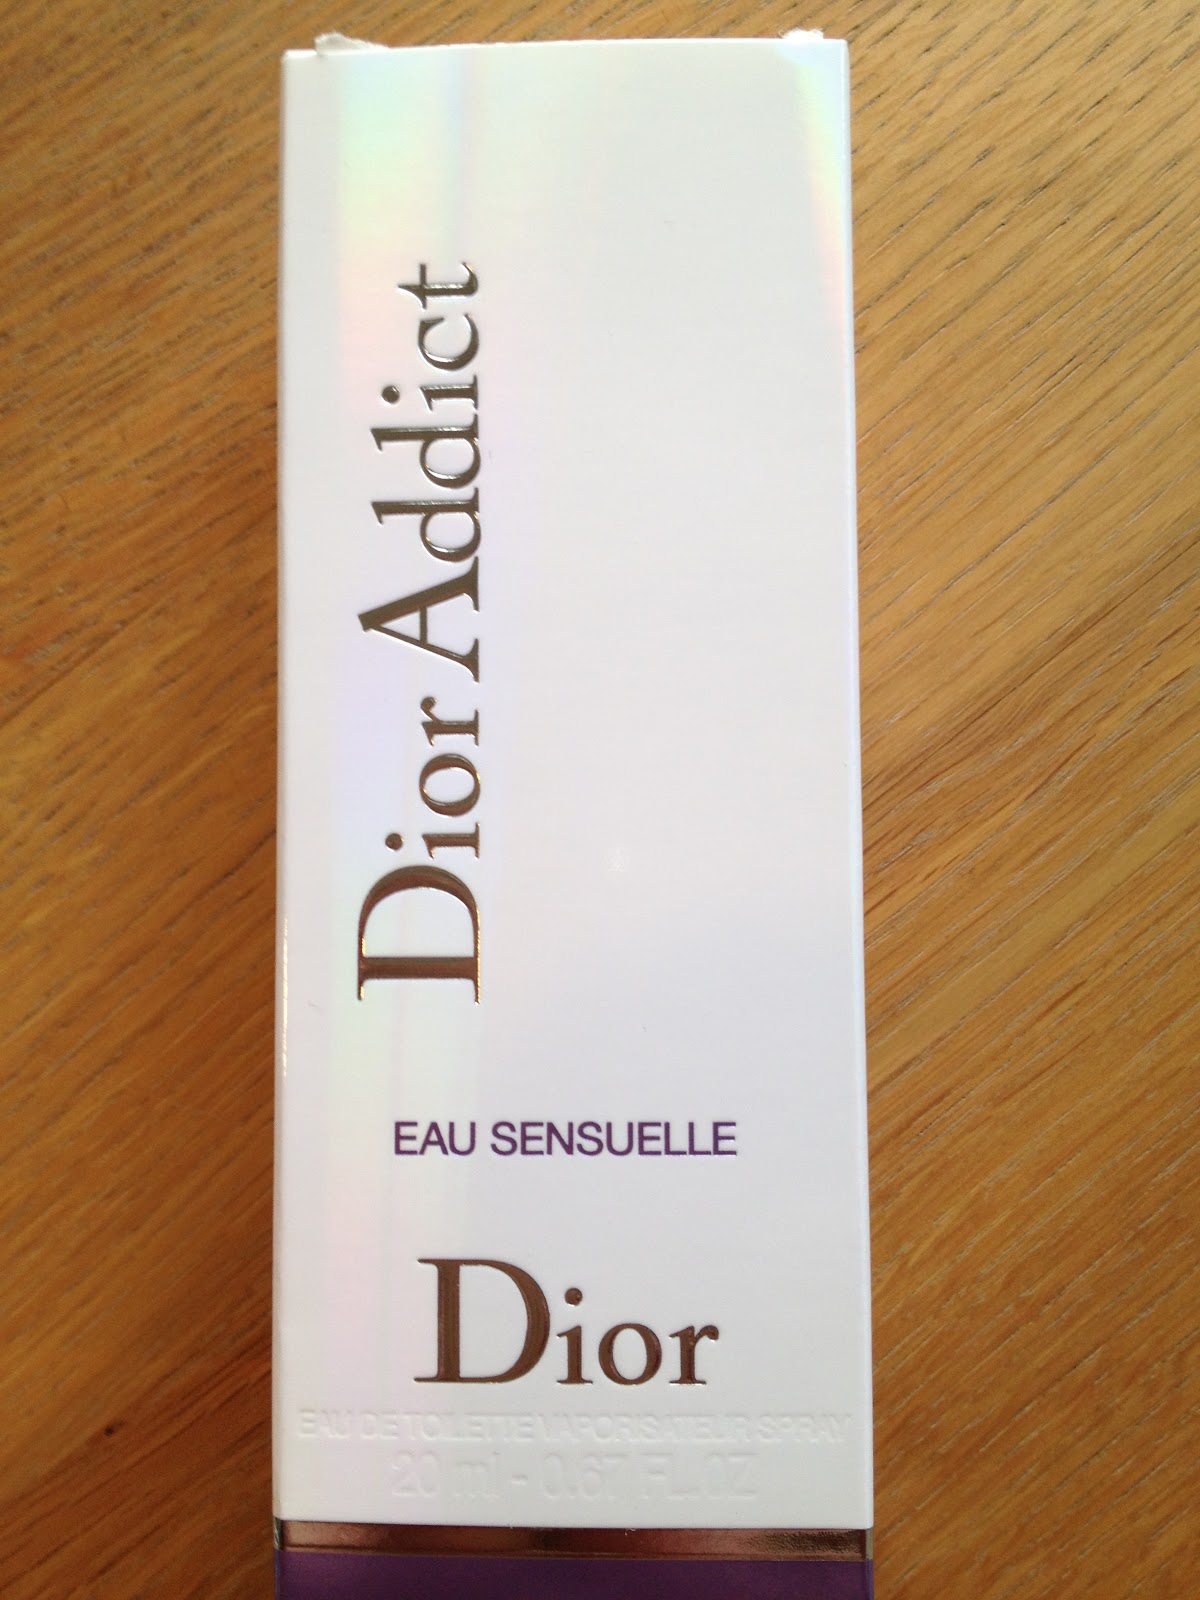 Le pas it blog: Eau Sensuelle Dior Addict